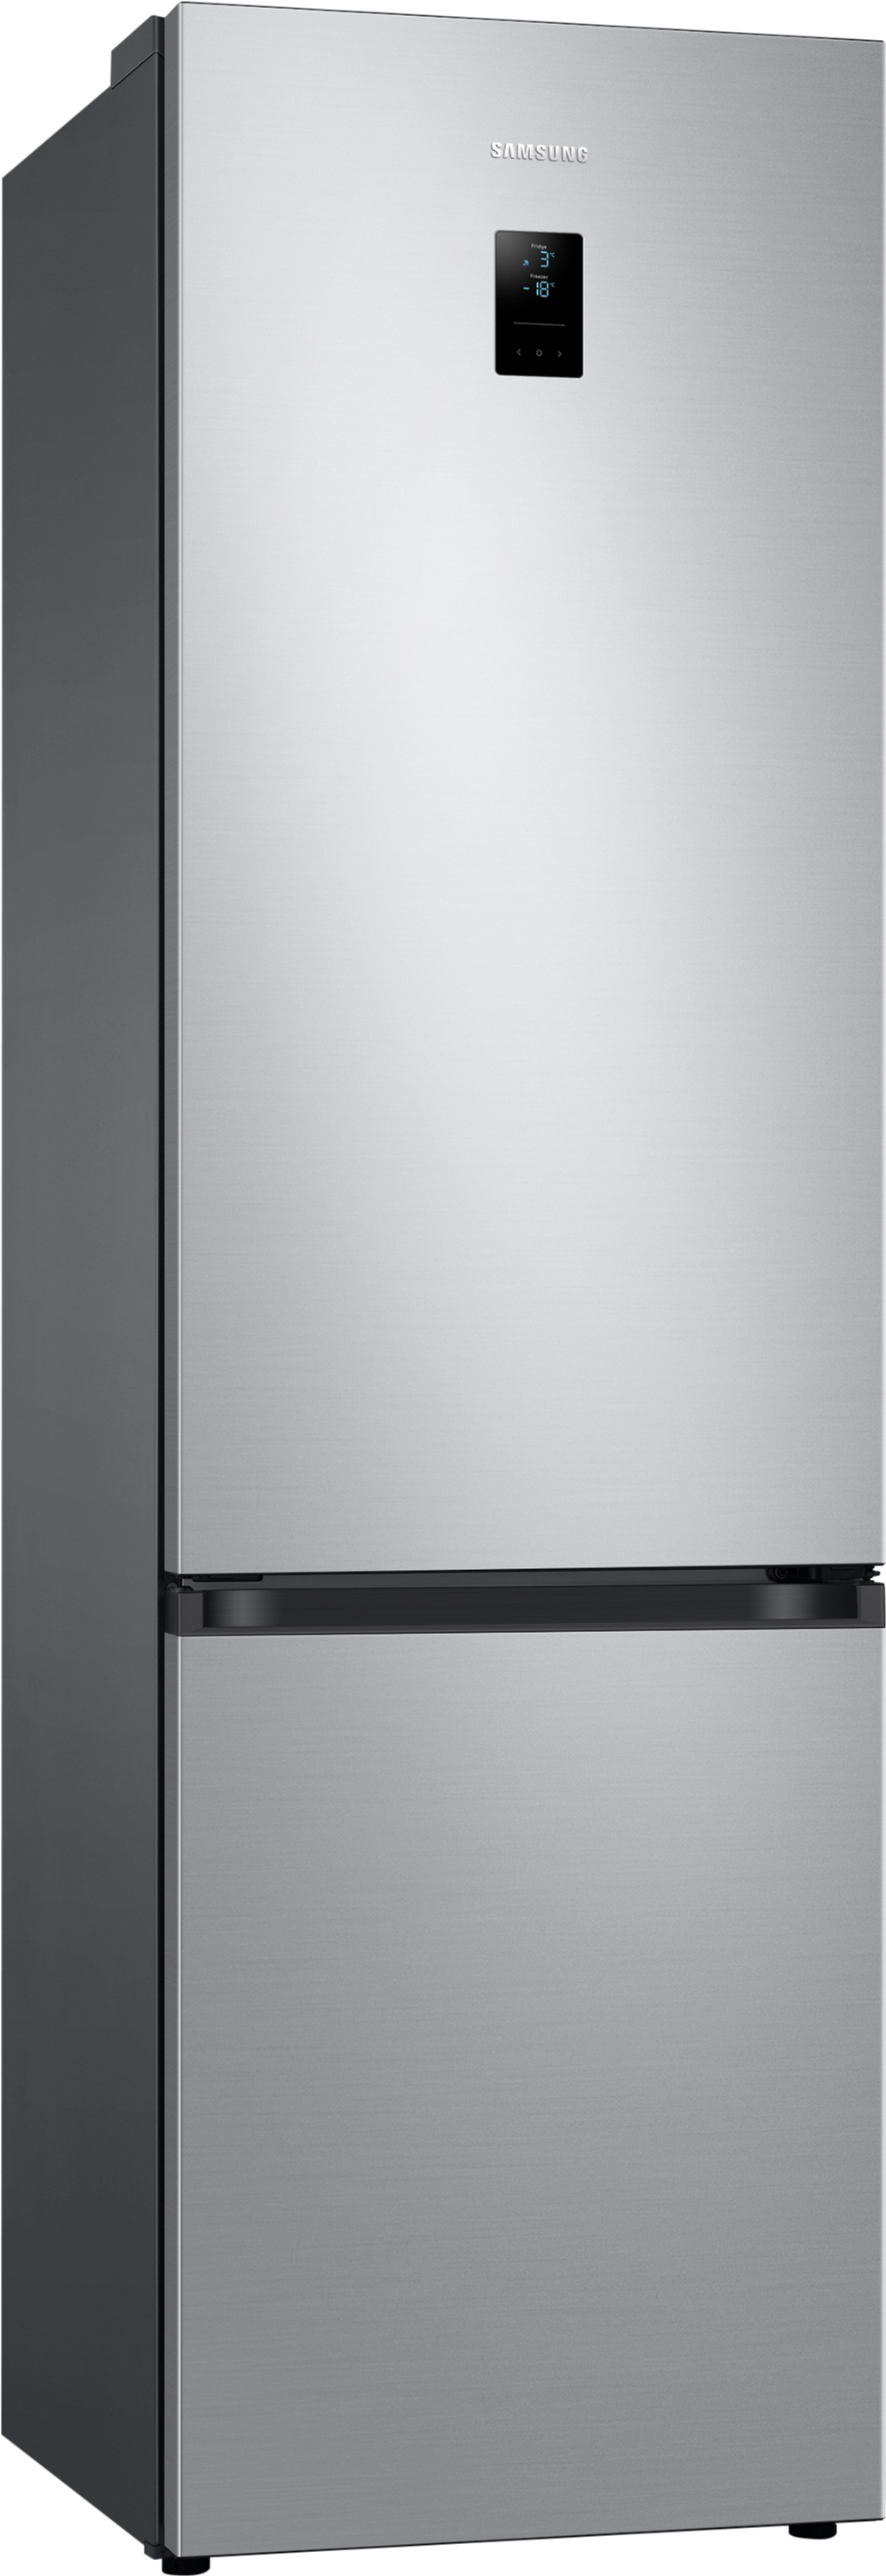 Холодильник Samsung RB38T676FSA/UA отзывы - изображения 5